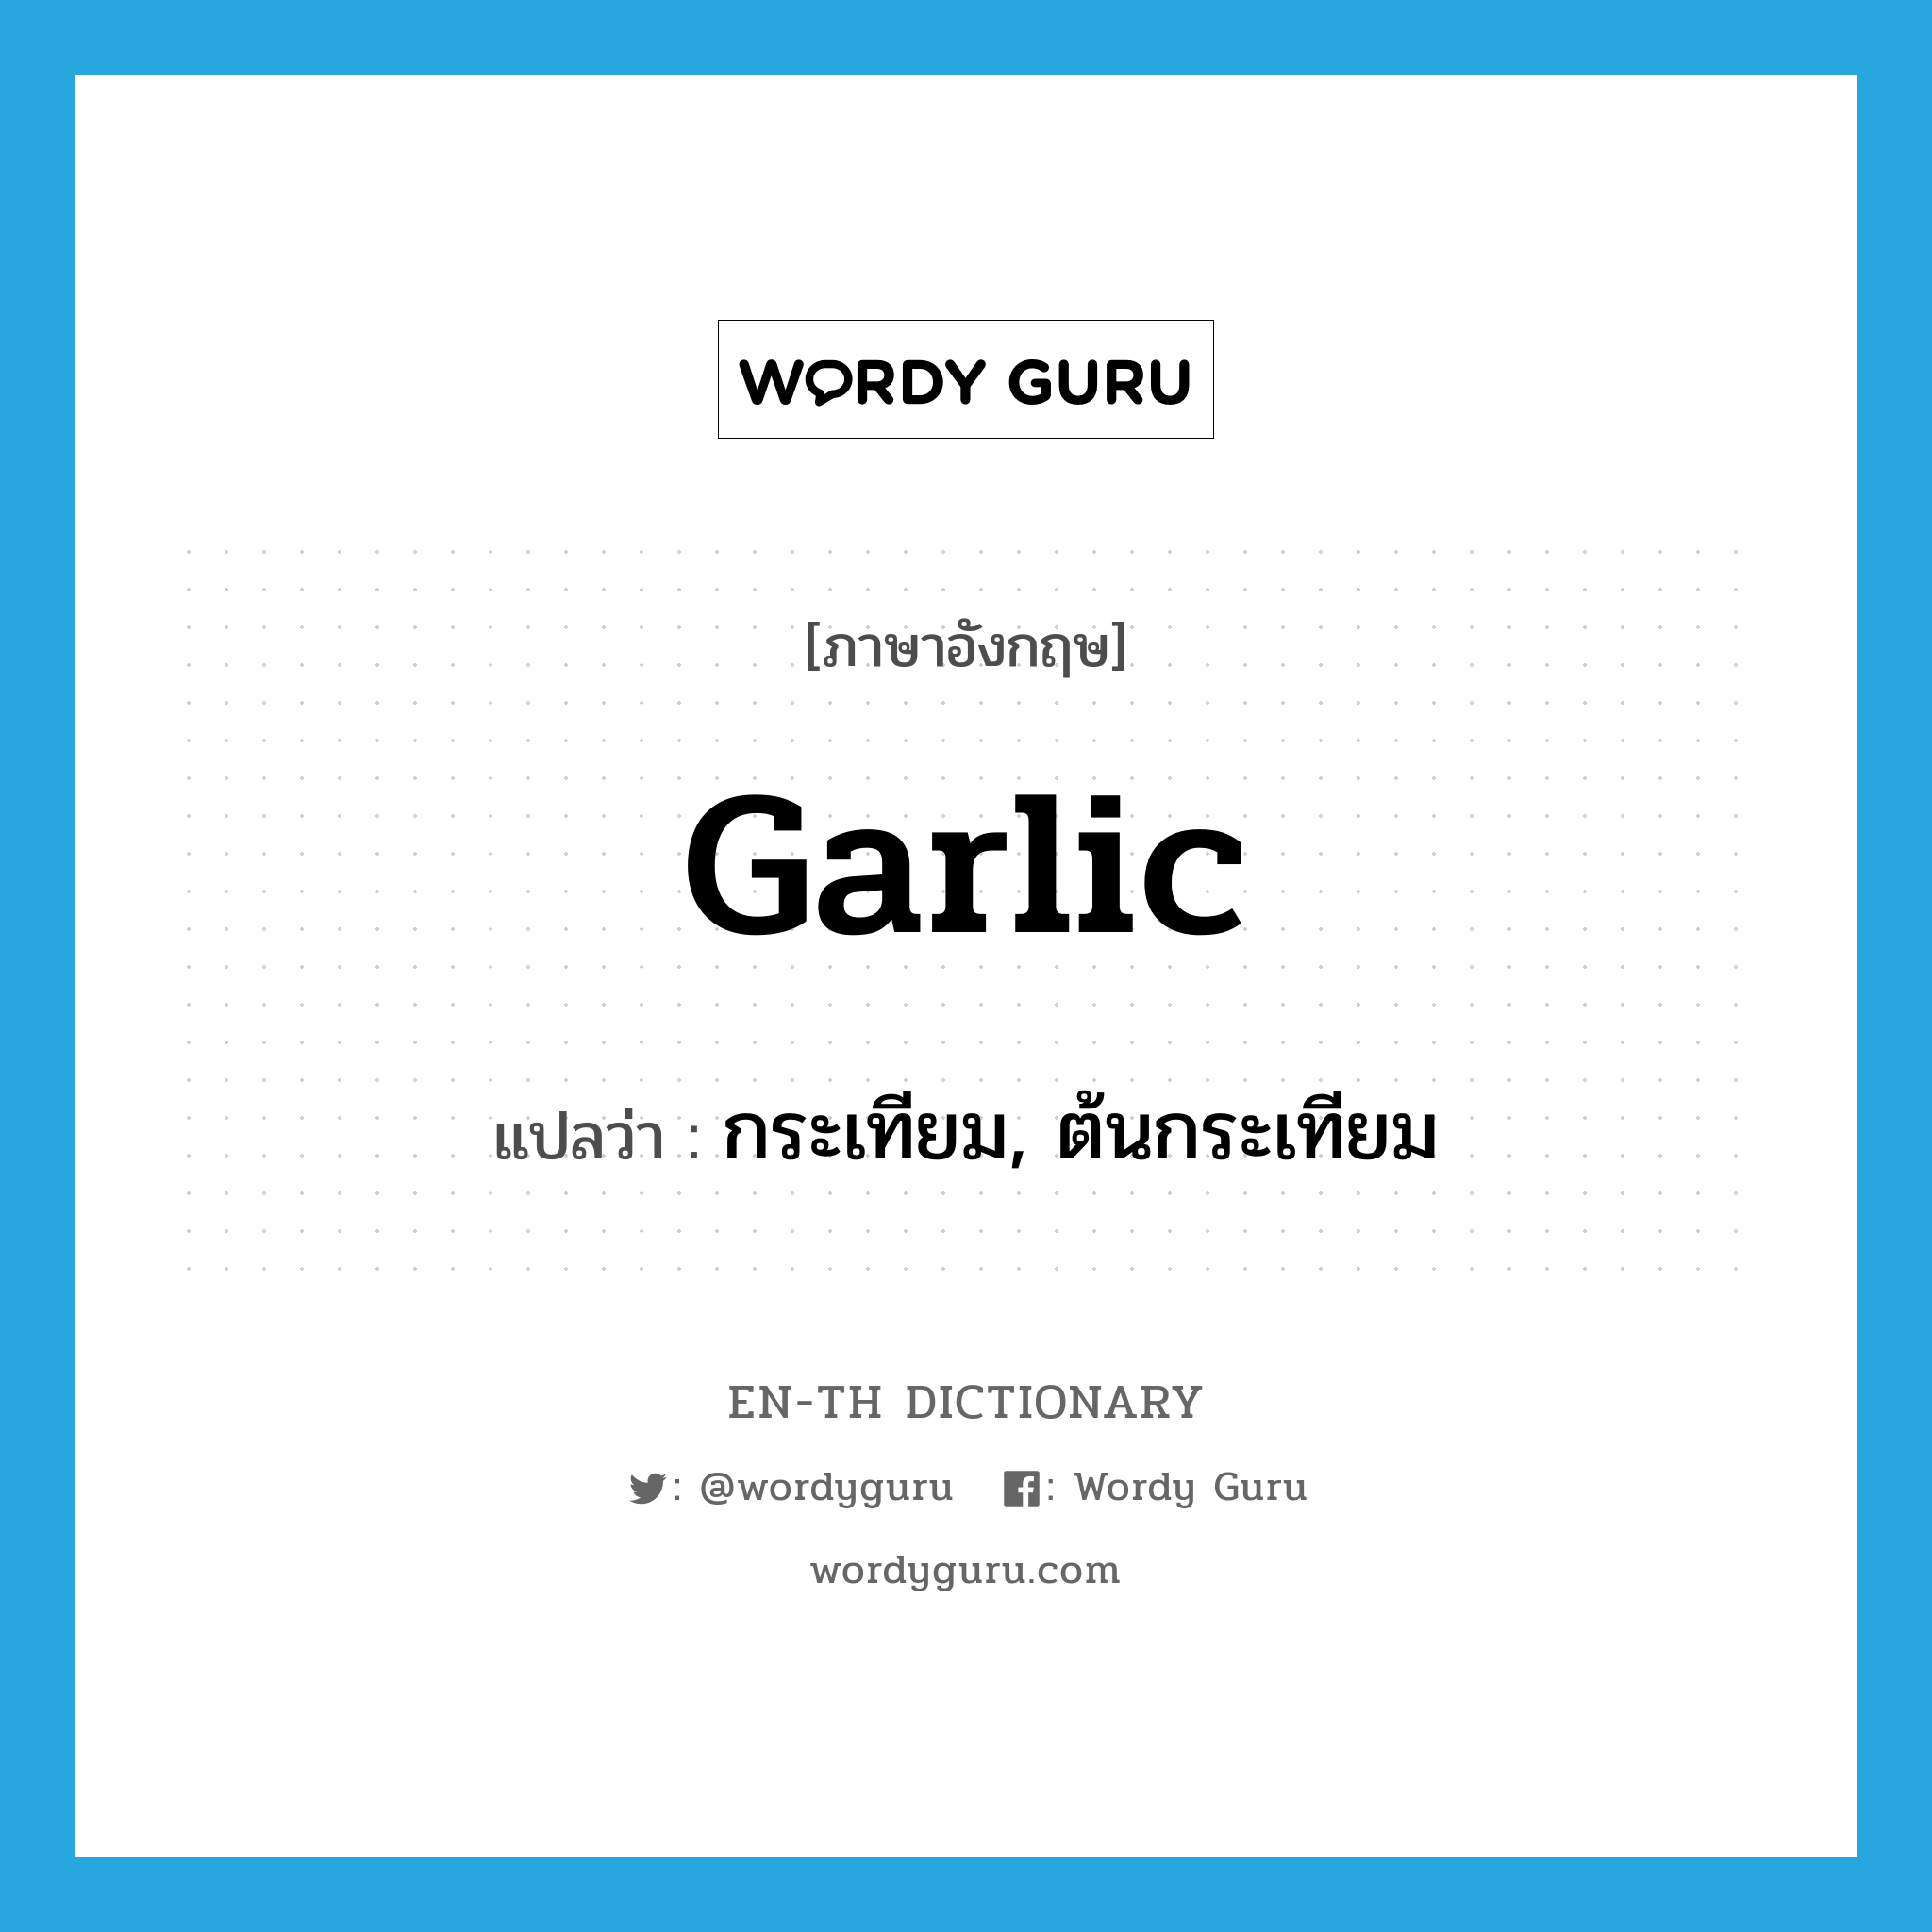 กระเทียม, ต้นกระเทียม ภาษาอังกฤษ?, คำศัพท์ภาษาอังกฤษ กระเทียม, ต้นกระเทียม แปลว่า garlic ประเภท N หมวด N